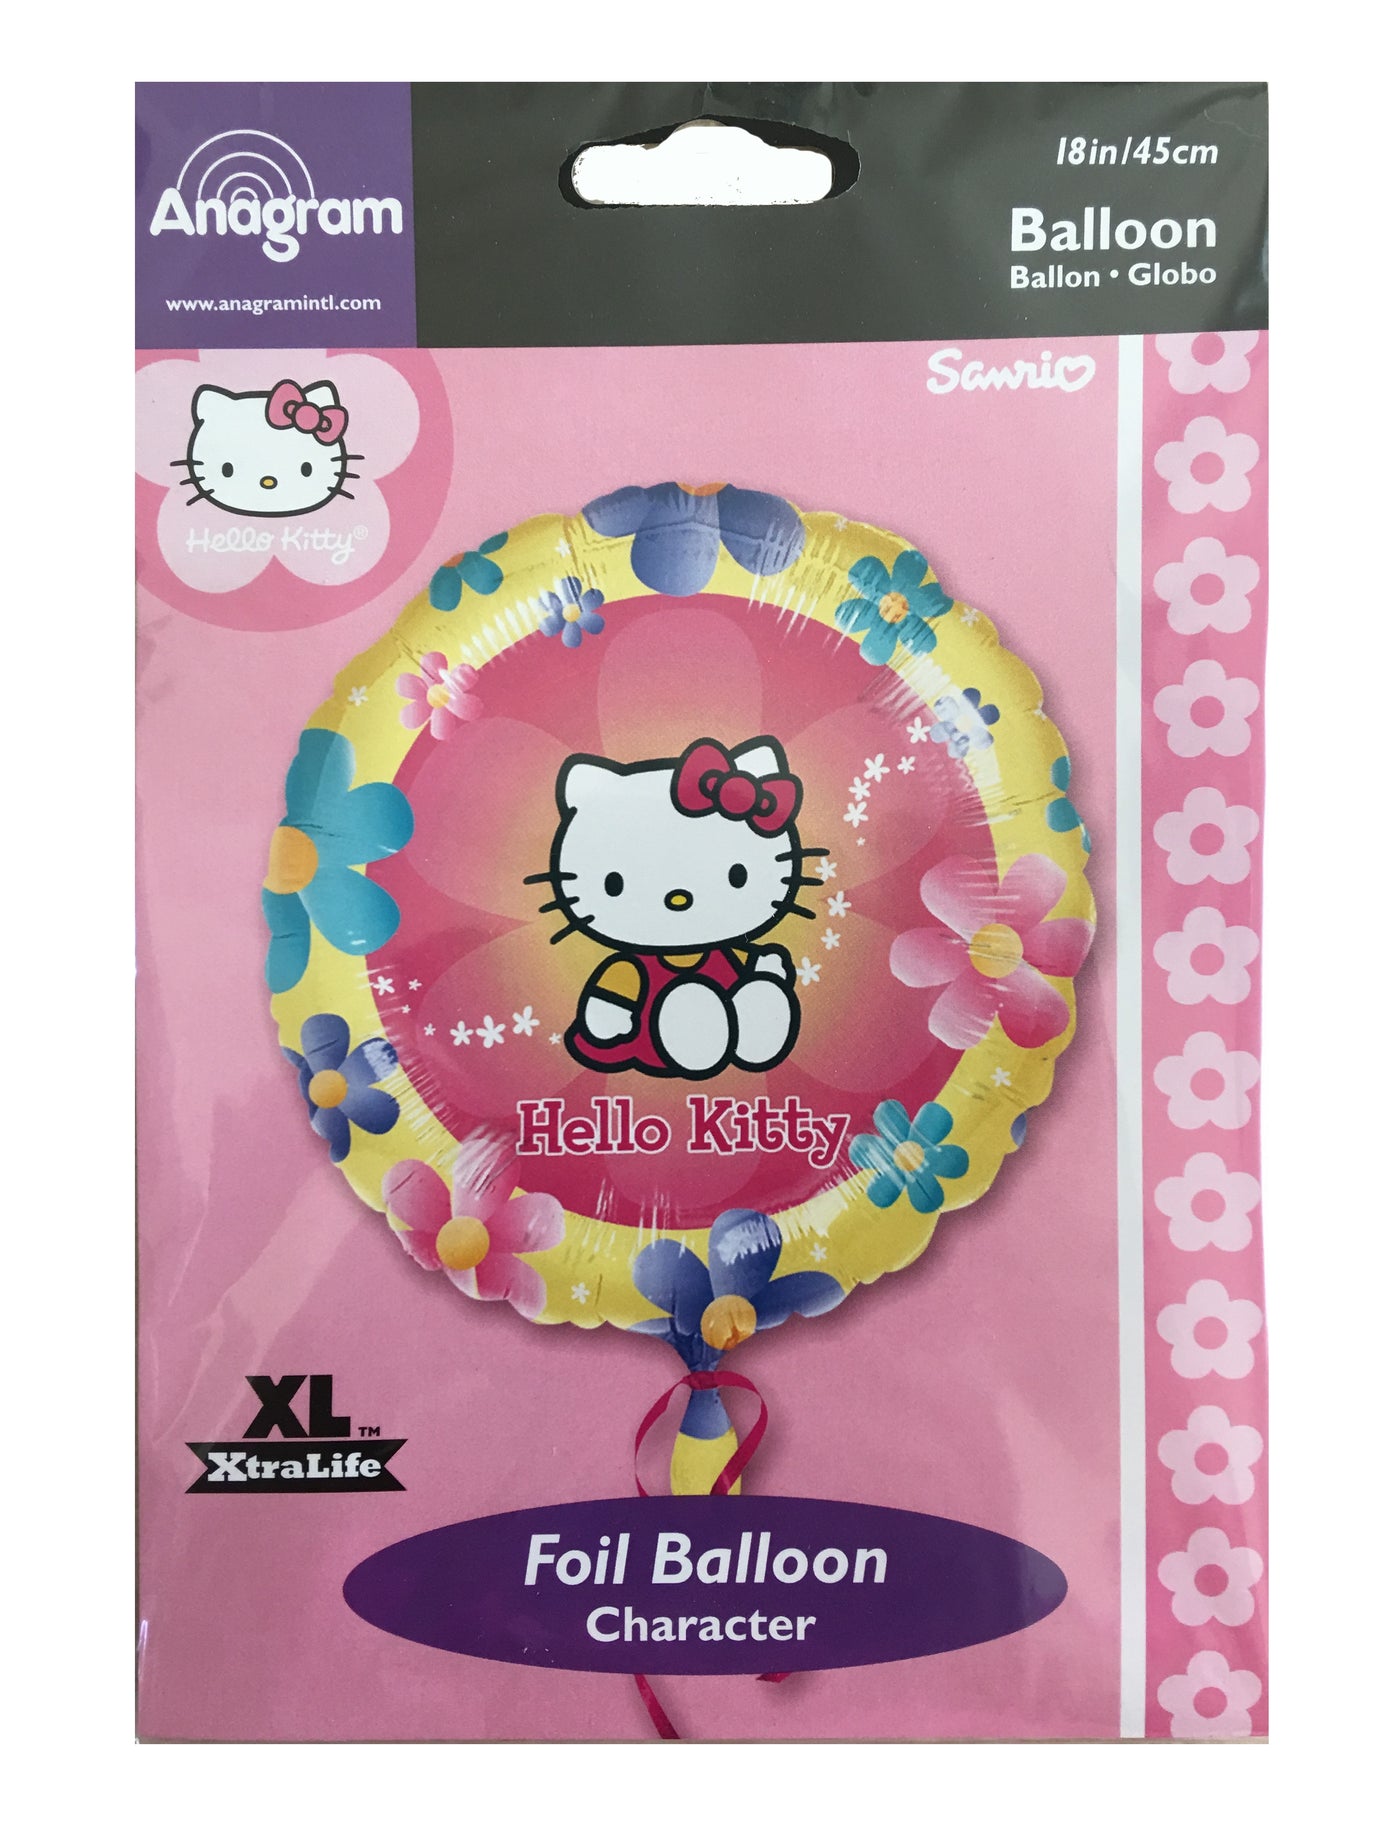 Ballon en latex rose pastel - 45 cm